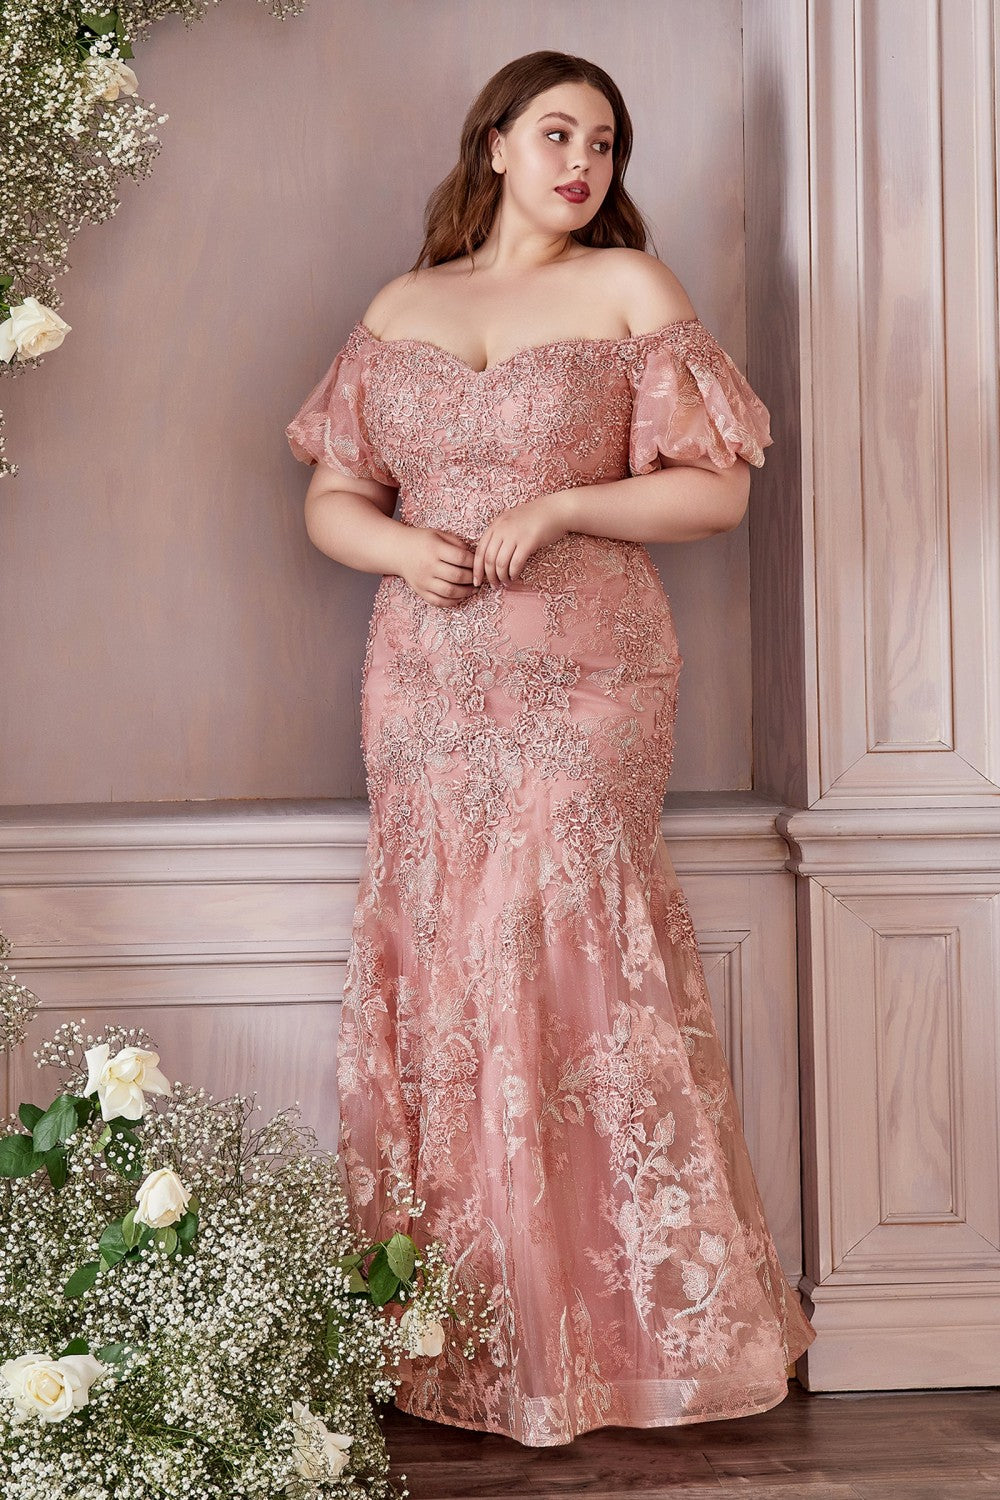 Satin Dusty Rose A-line Lace Up Prom Dress With Split PL413 | Promnova